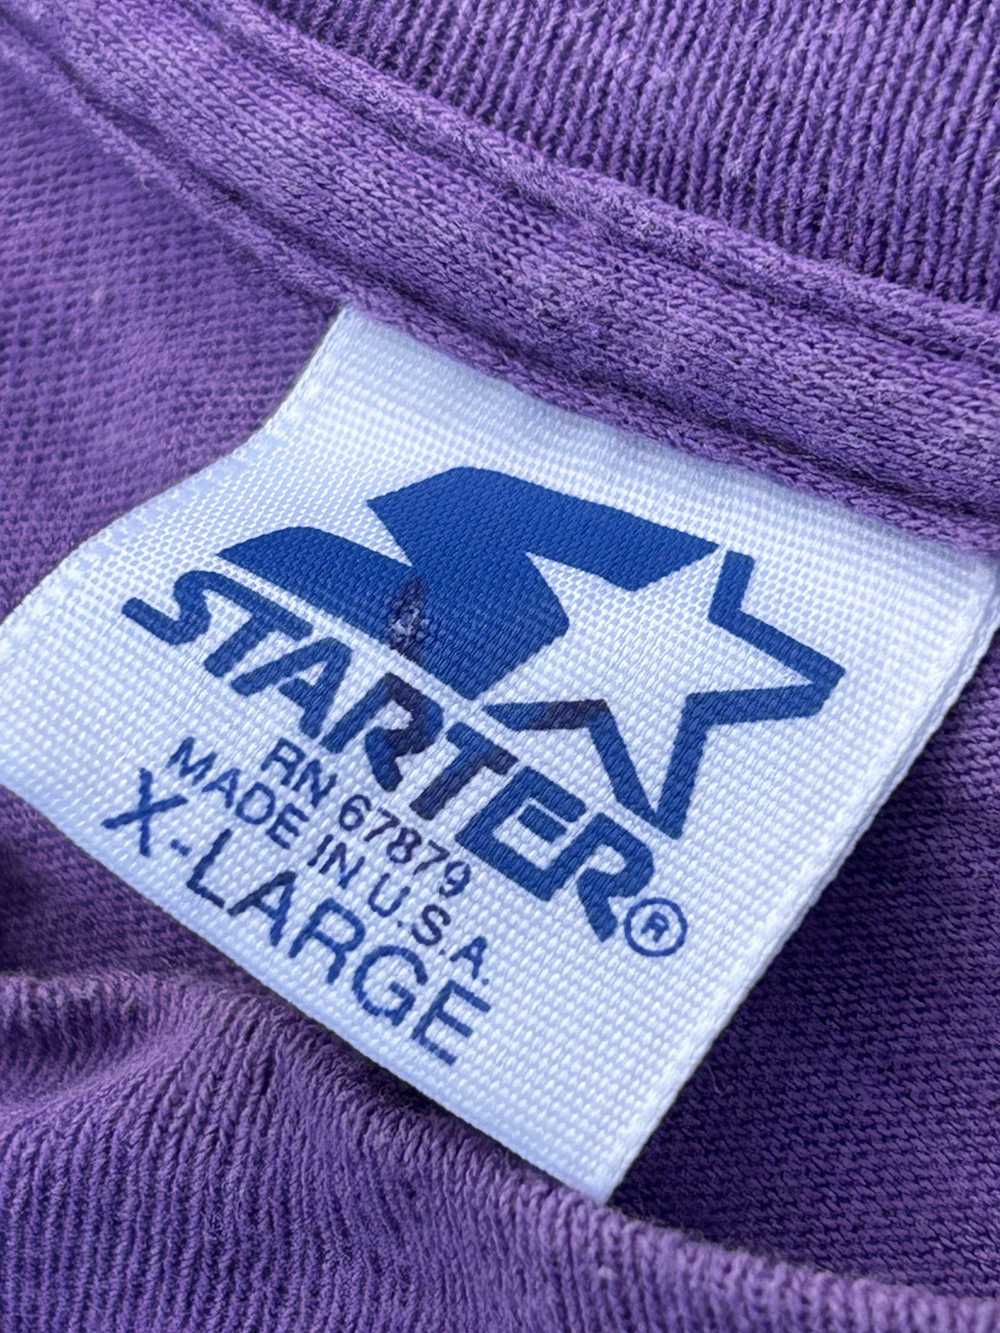 Starter Vintage Starter LA Laker t shirt size:XL - image 5